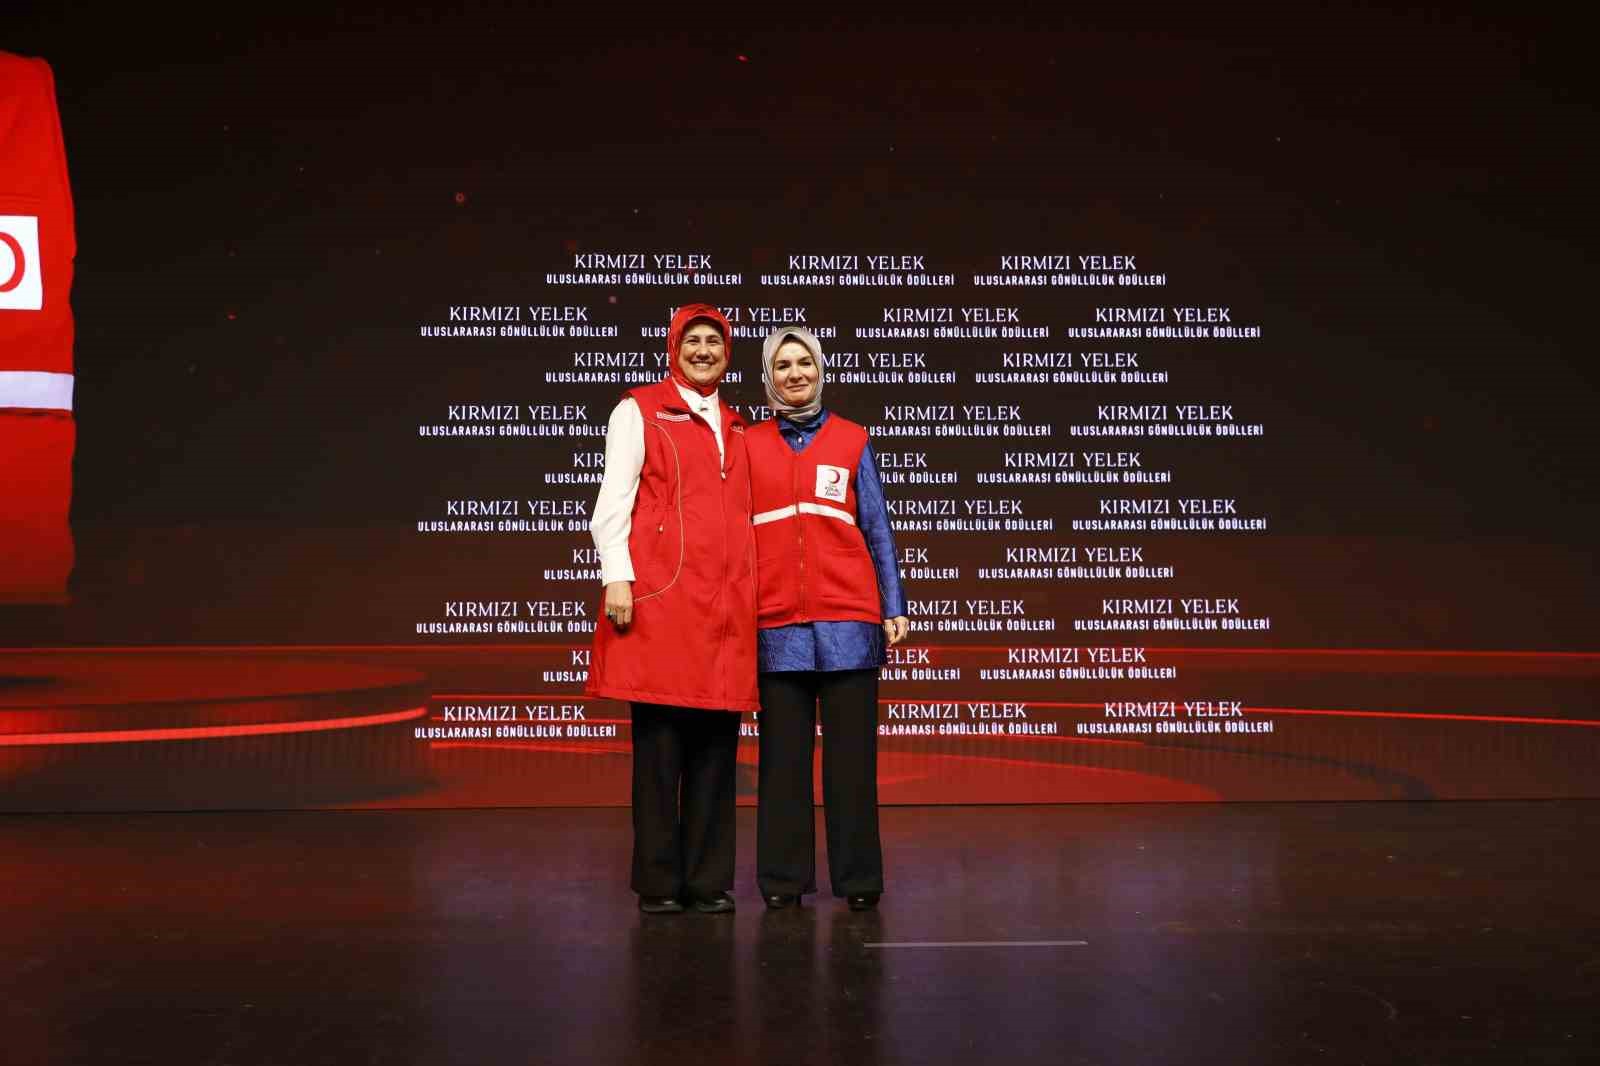 Türk Kızılay’ın “Uluslararası Kırmızı Yelek Gönüllülük Ödülleri” verildi
